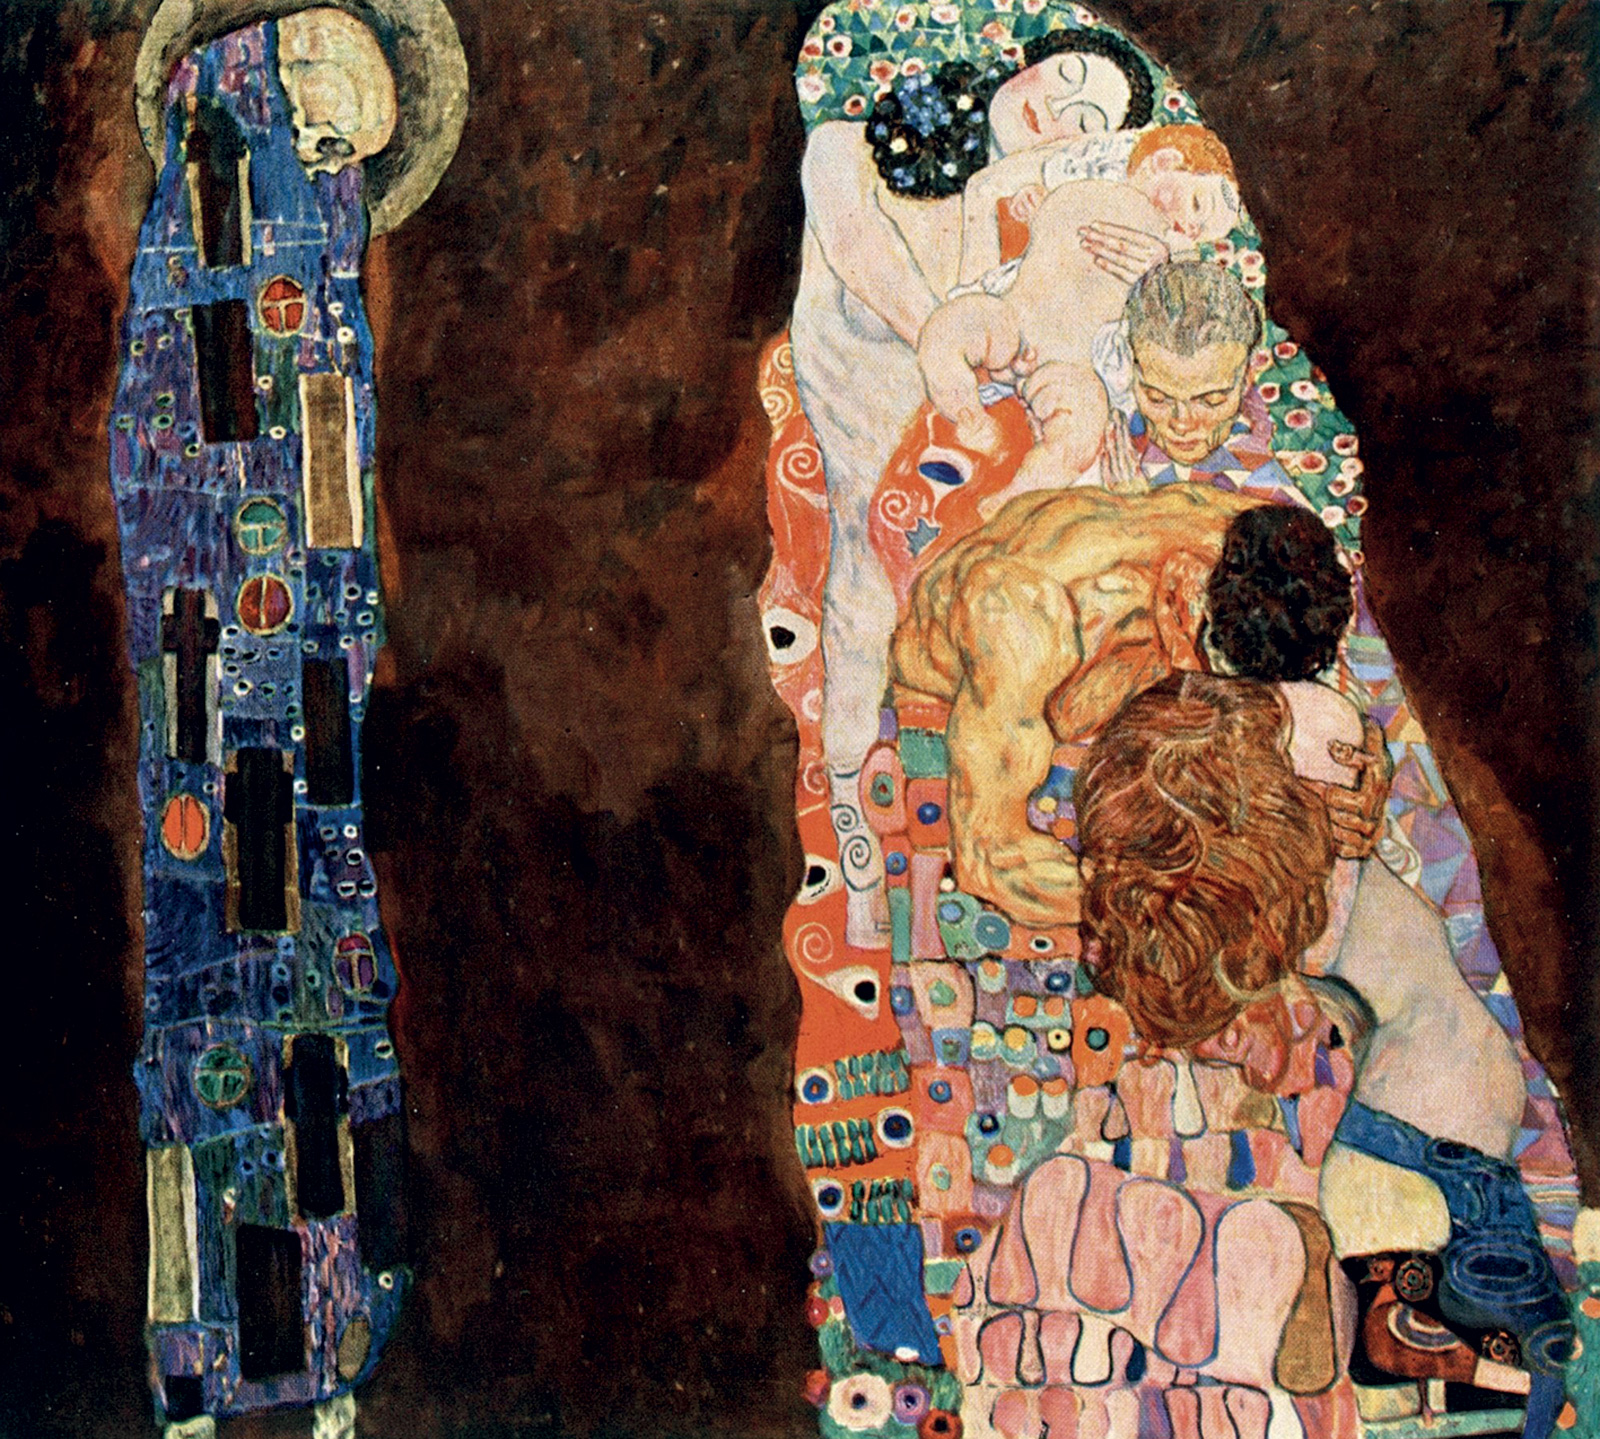 Gustav Klimt, *Vida y muerte*, 1915. Leopold Museum Vienna